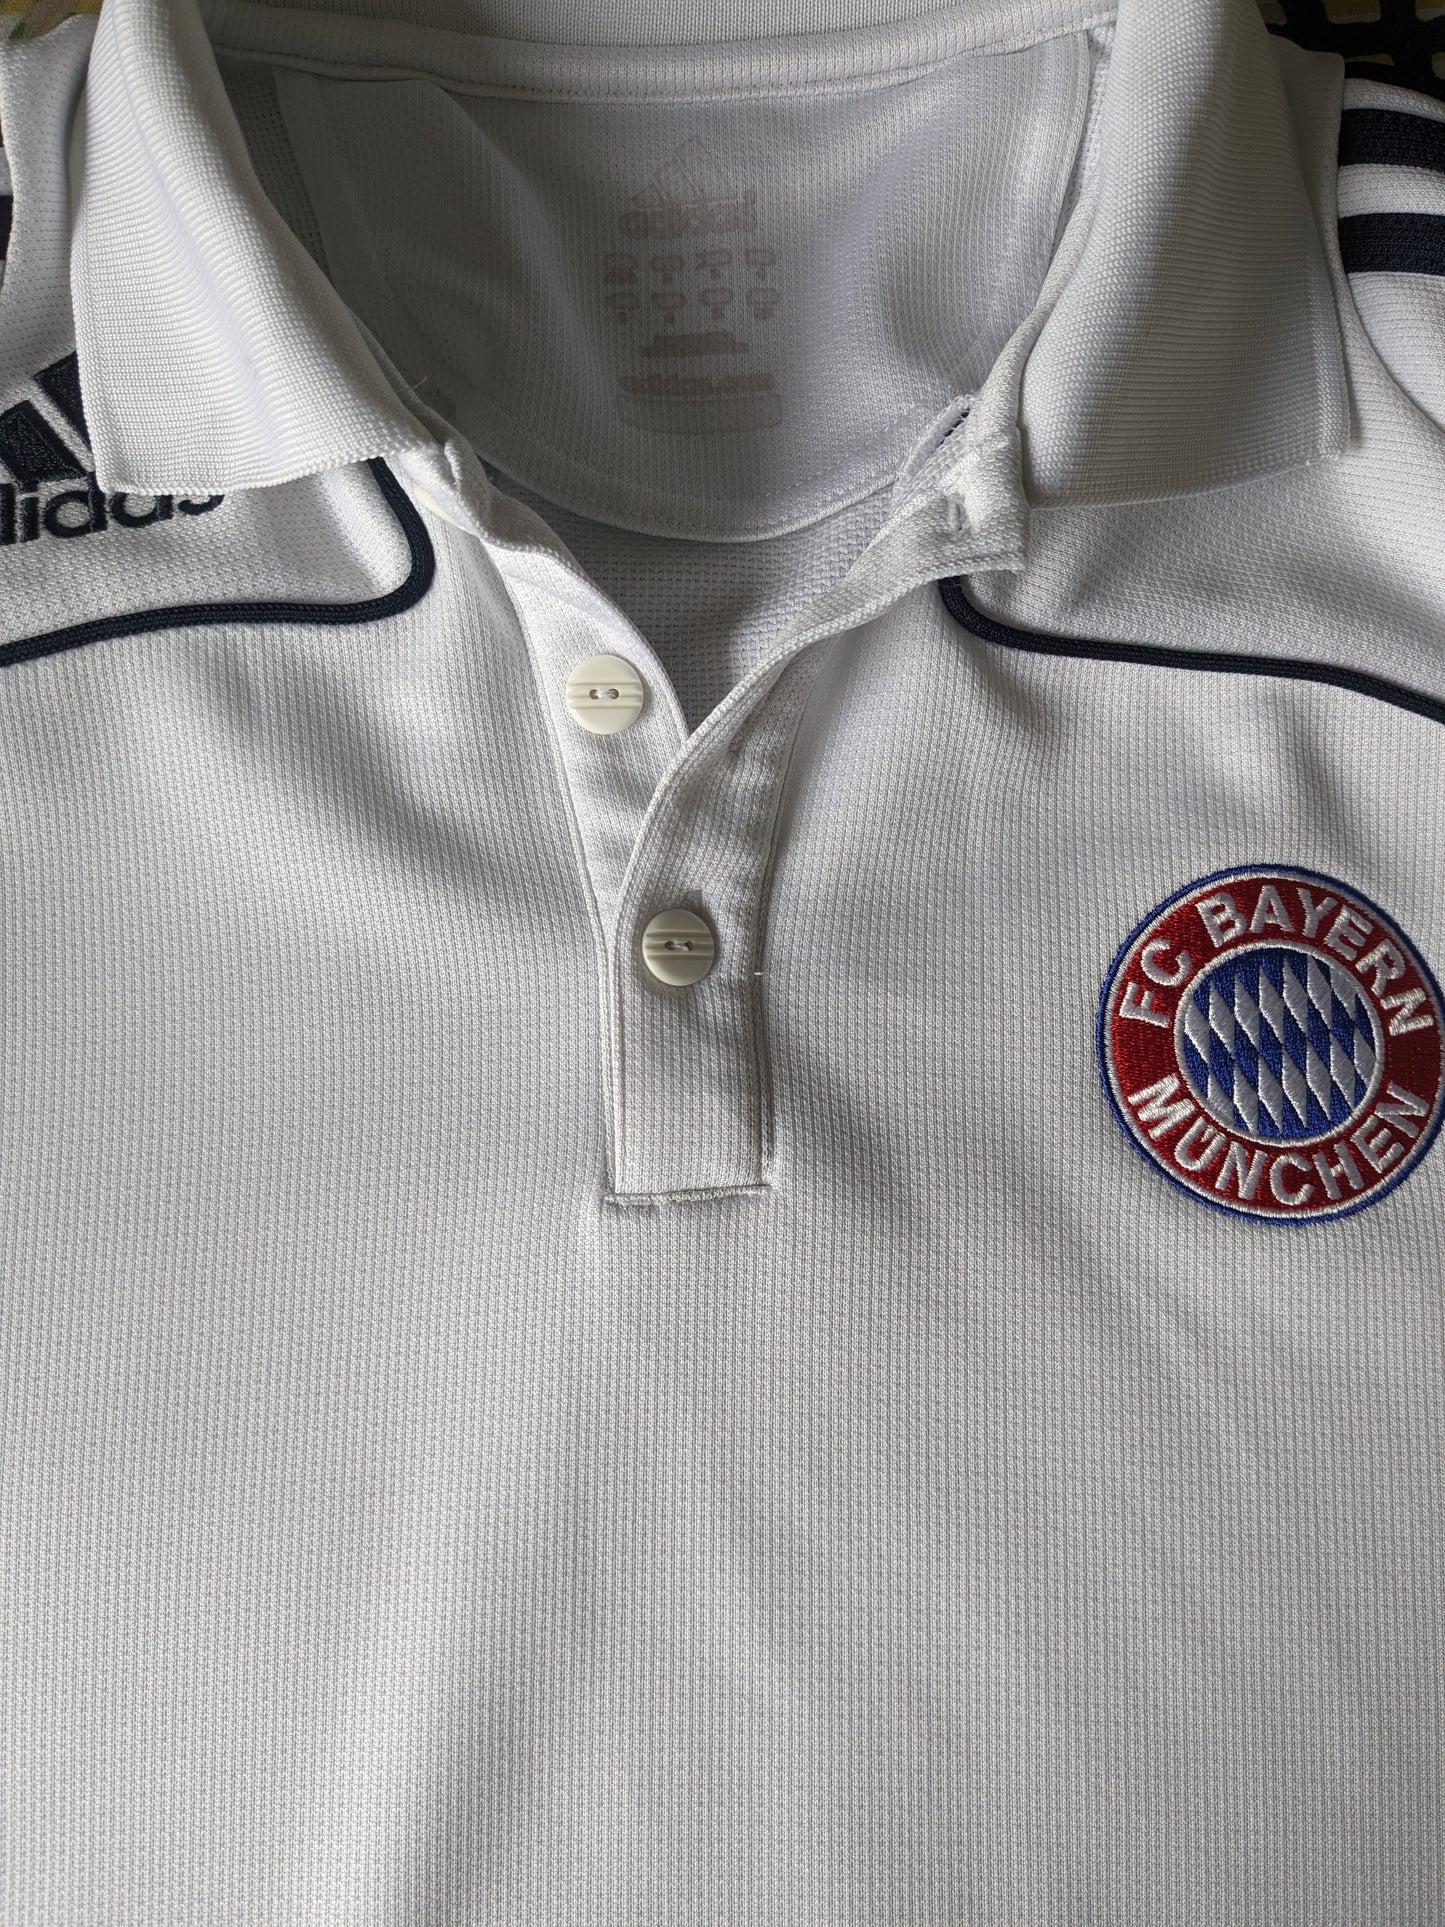 Adidas FC Bayern München sport polo. Blauw Wit gekleurd. Maat S.